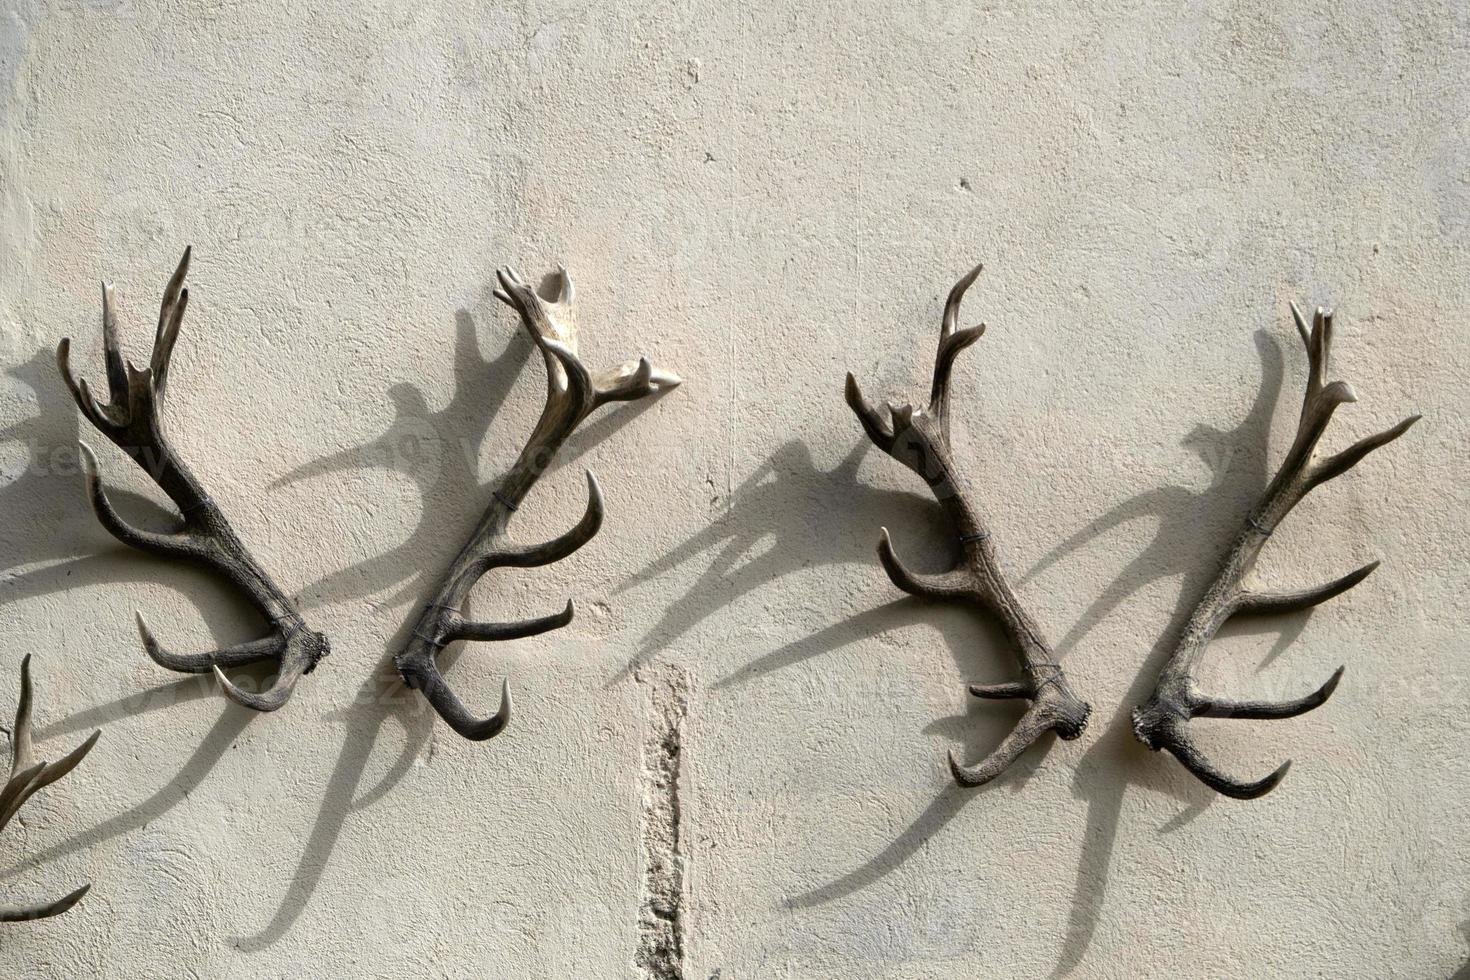 deer antlers on building wall photo